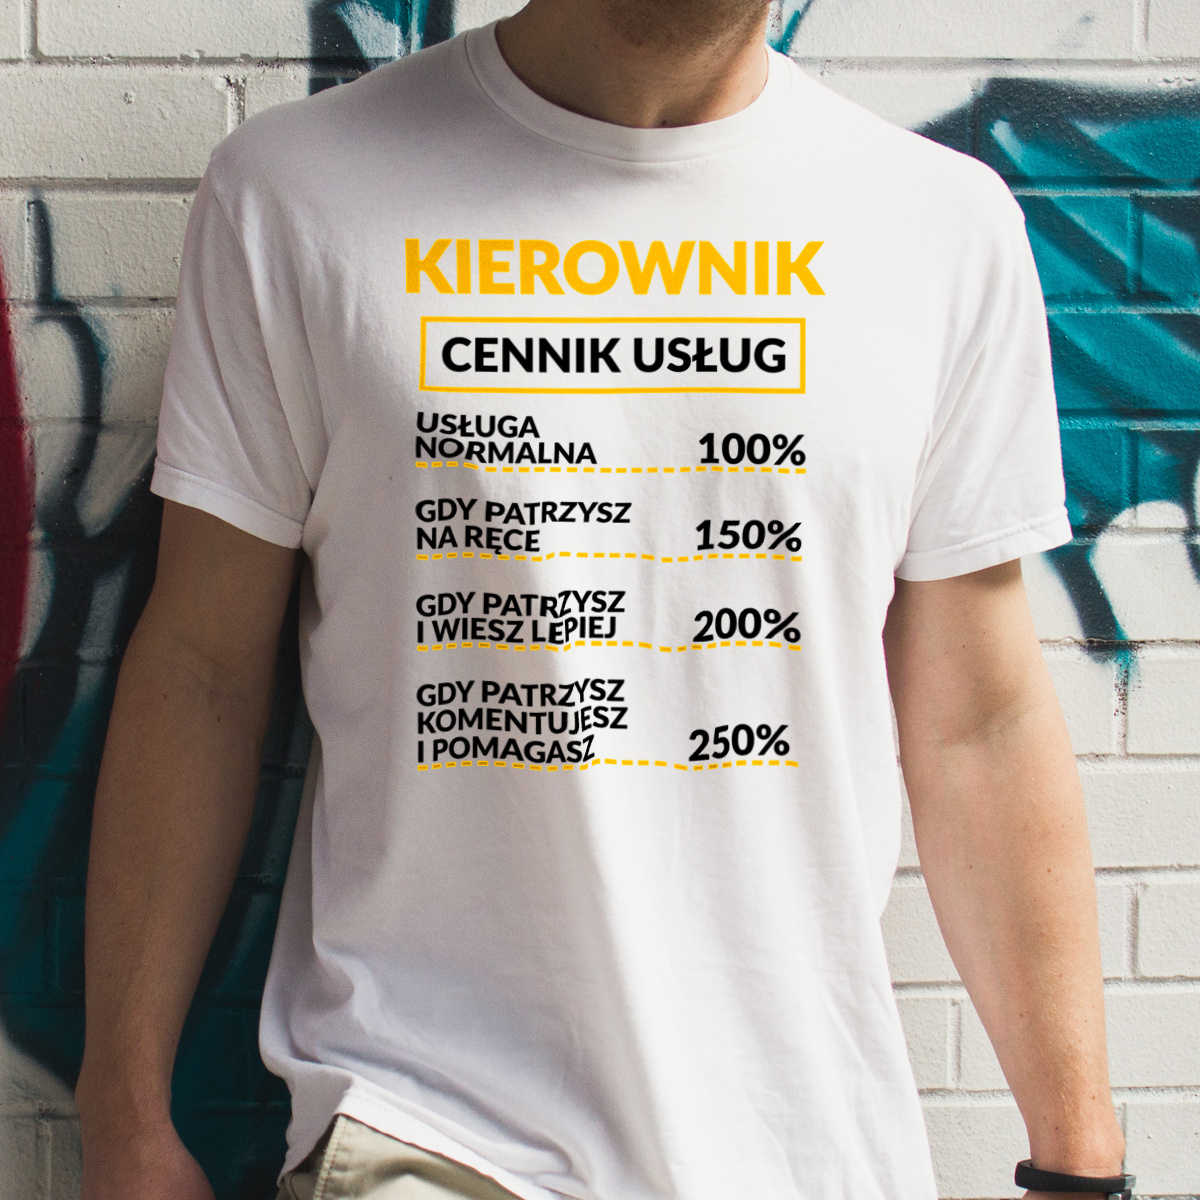 Kierownik - Cennik Usług - Męska Koszulka Biała